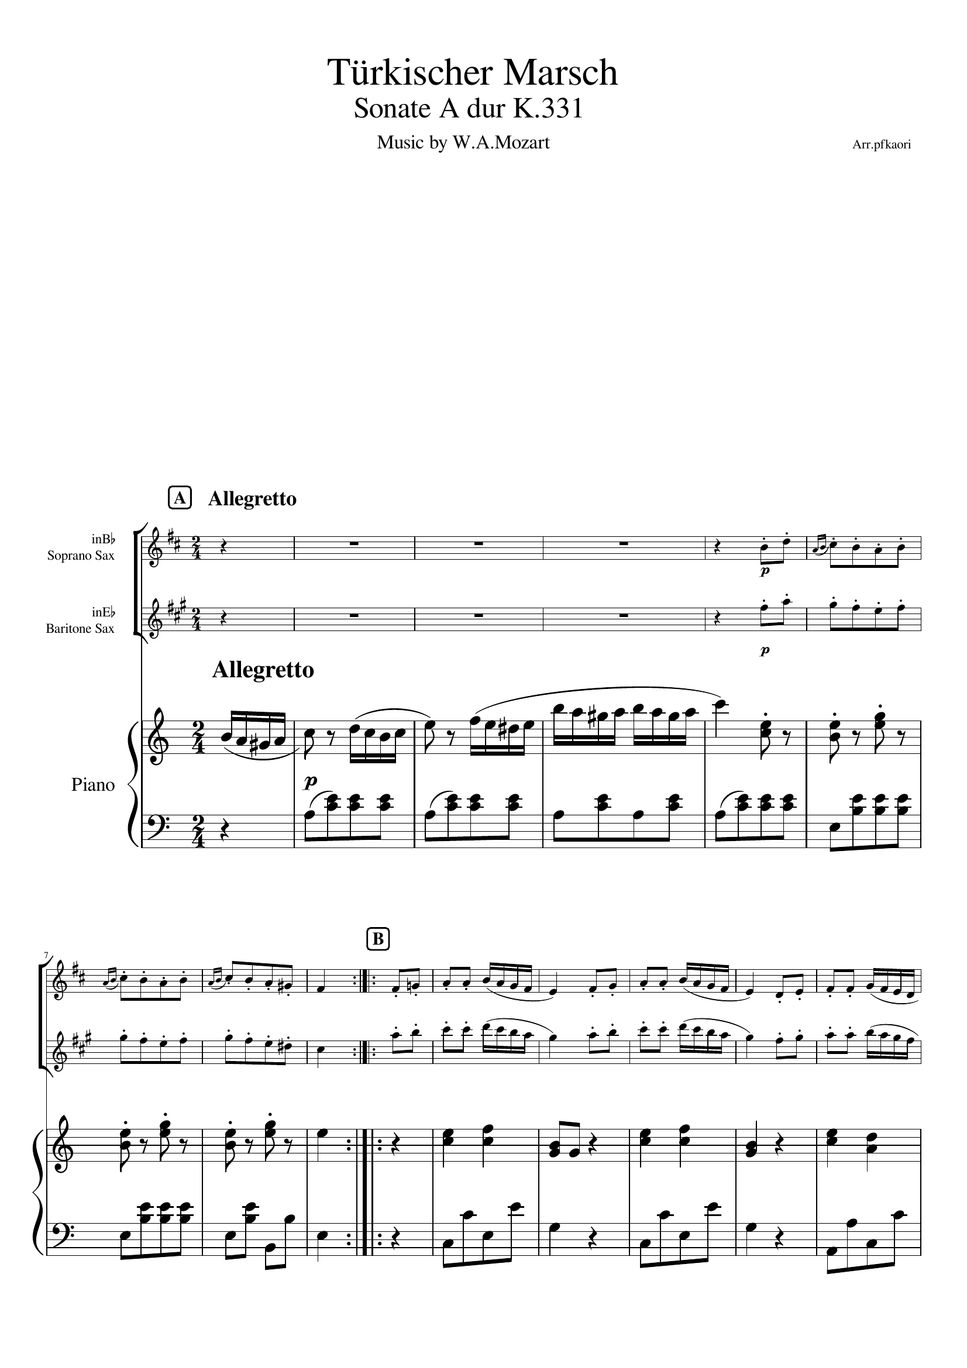 Mozart - Turkish March (Soprano Sax & baritone Sax-pianotrio) by pfkaori